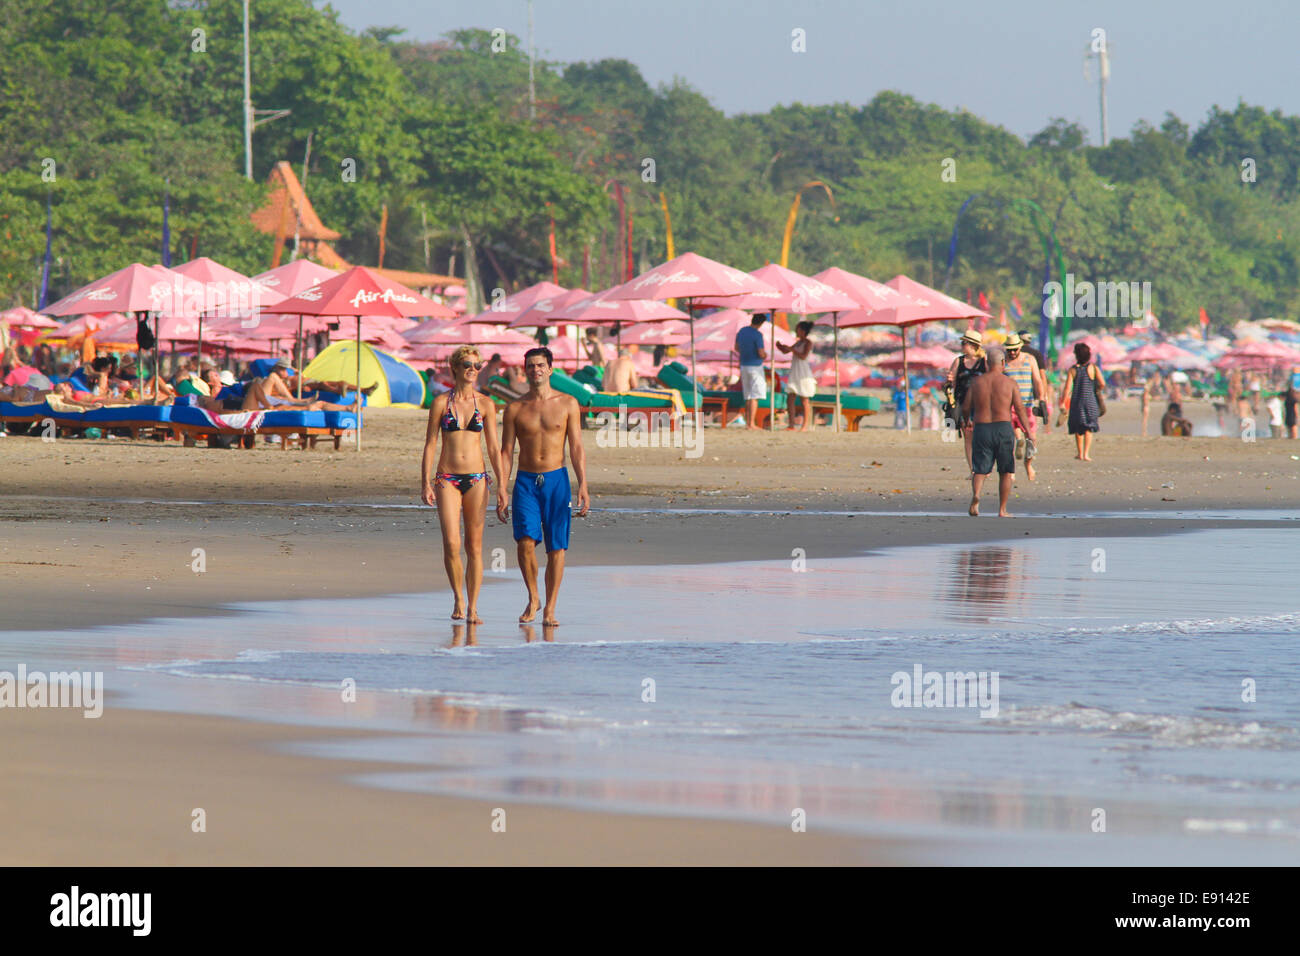 La spiaggia di kuta beach.Bali.Indonesia. Foto Stock